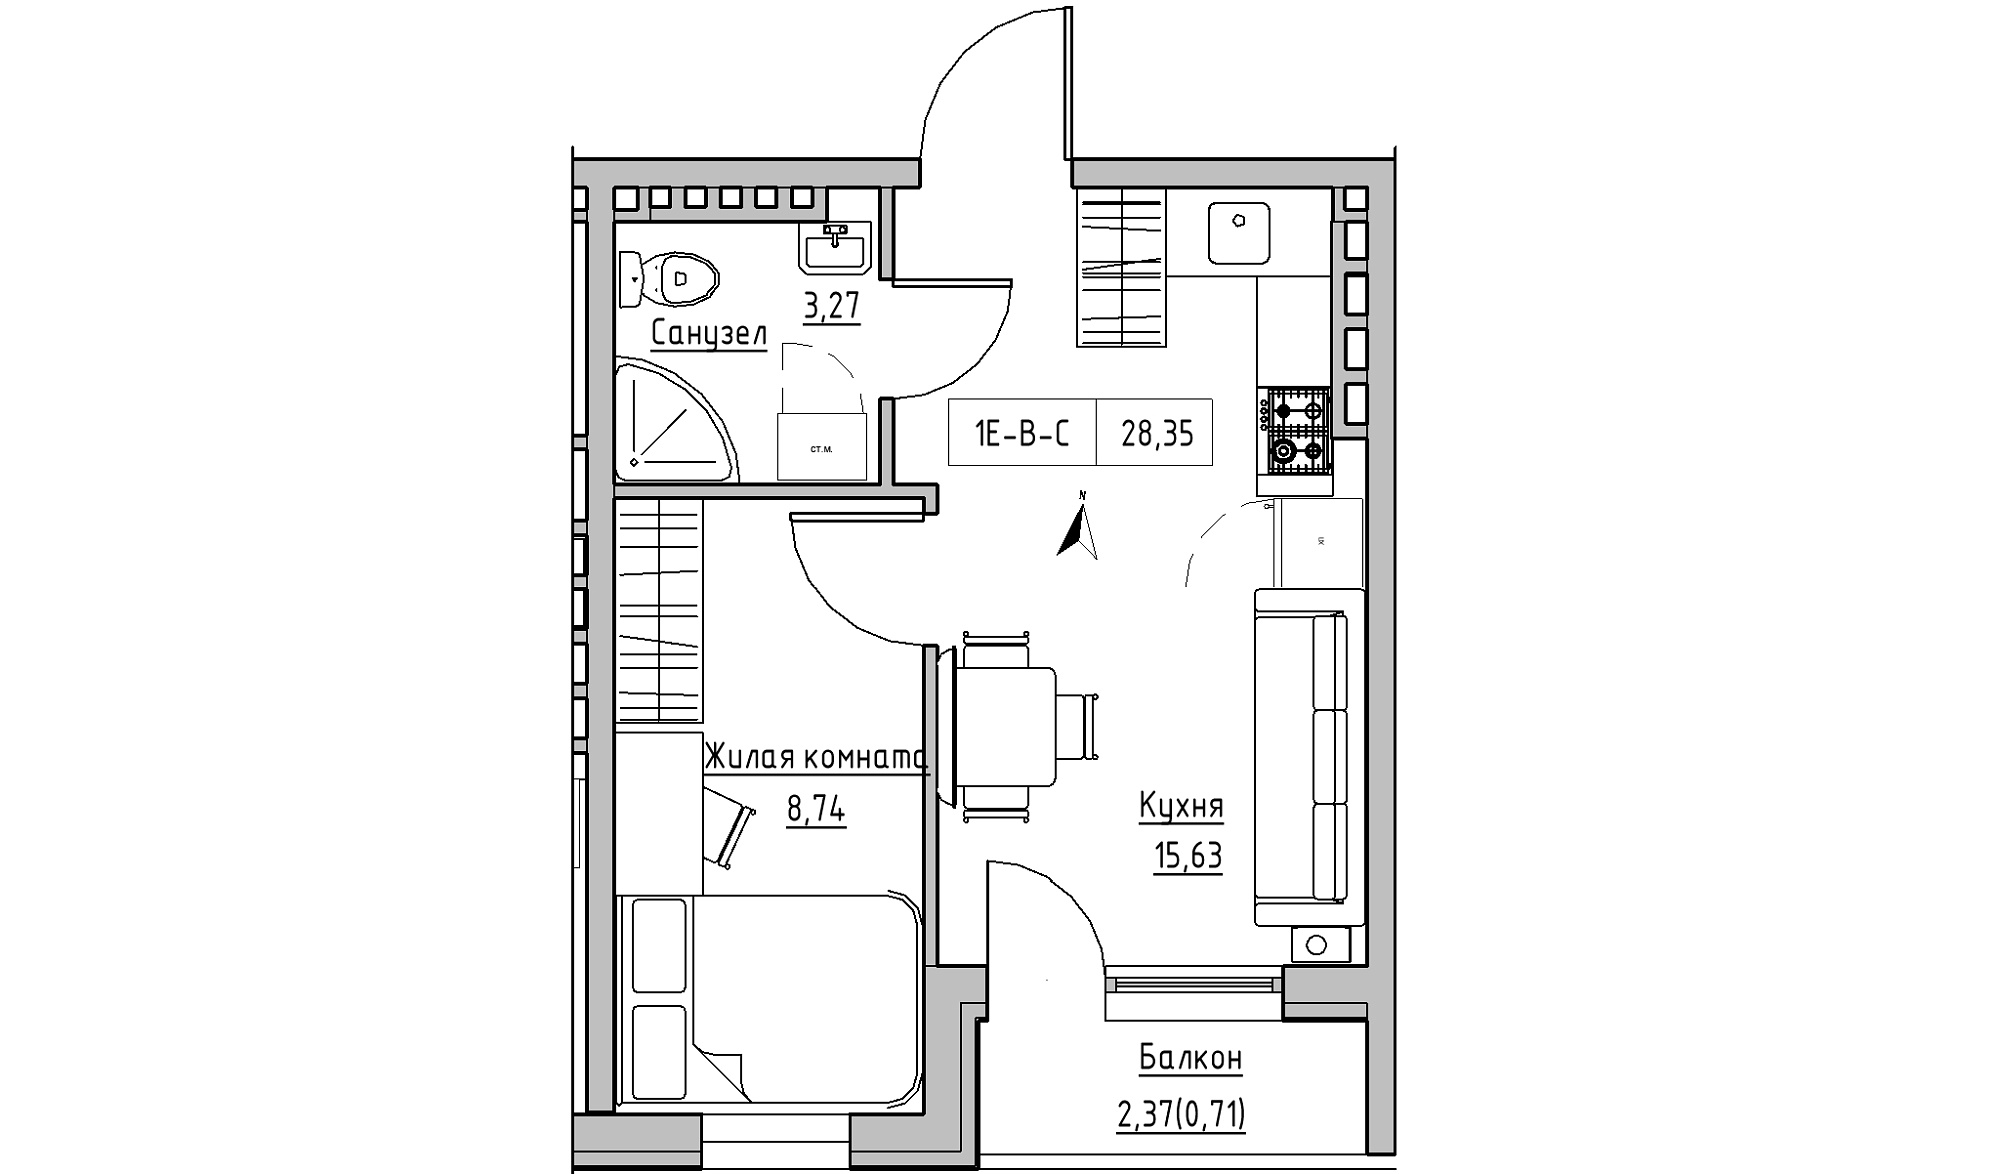 Планування 1-к квартира площею 28.35м2, KS-024-05/0008.